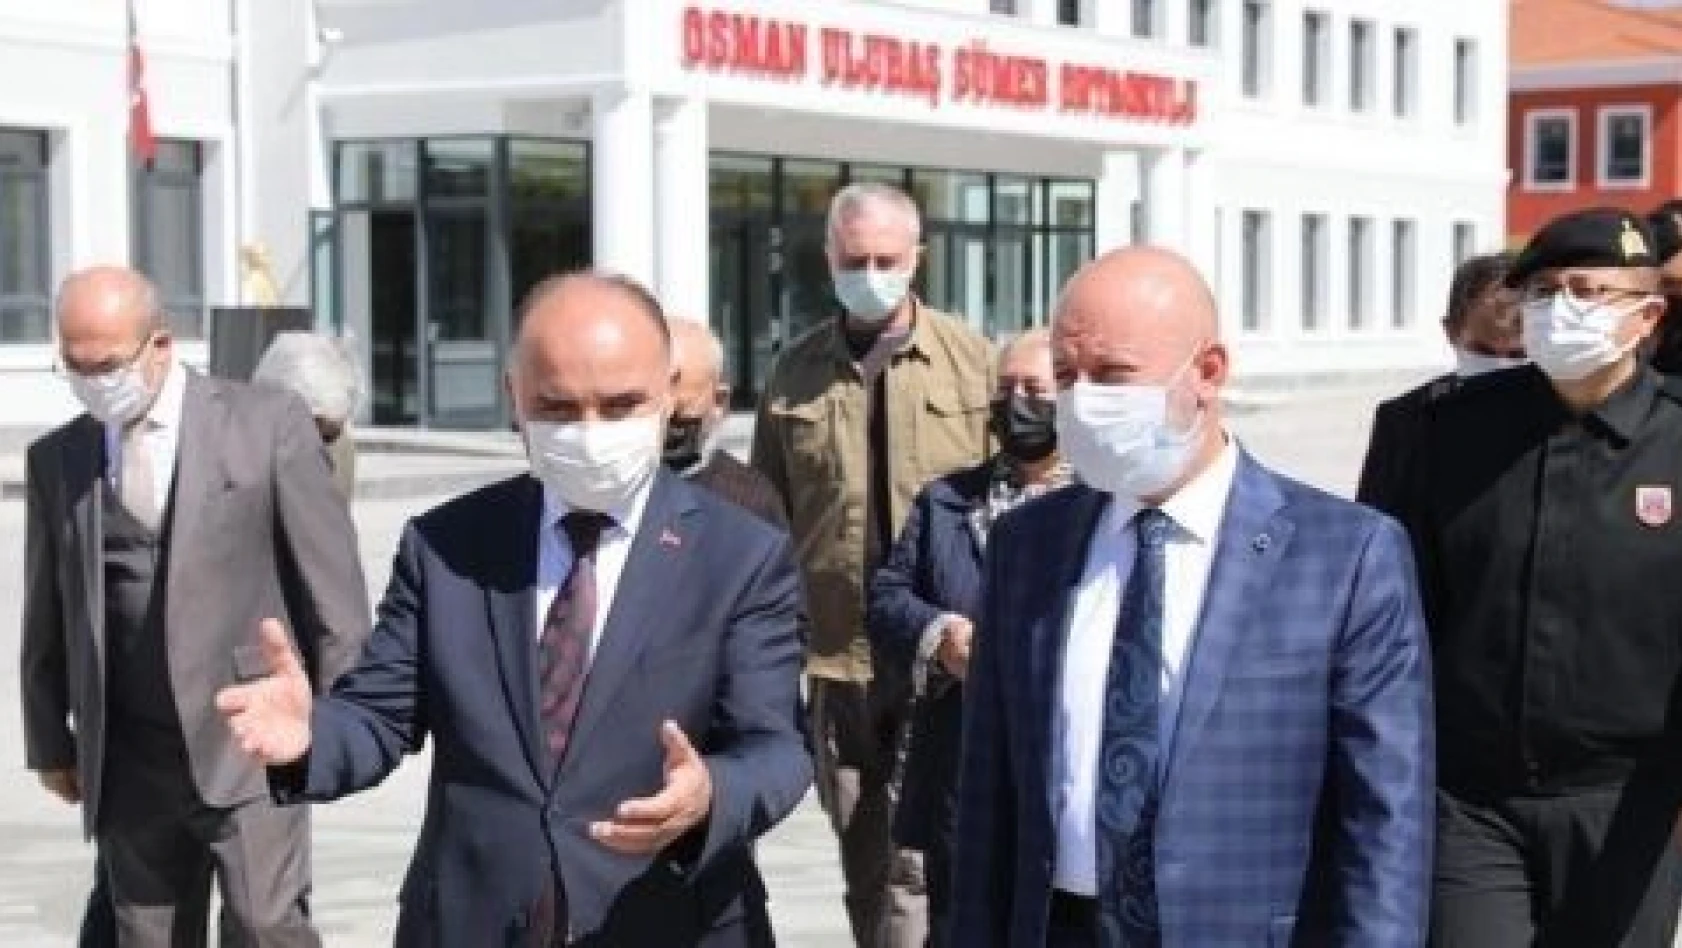  Osman Ulubaş Sümer Ortaokulu'nun açılmasına geri sayım